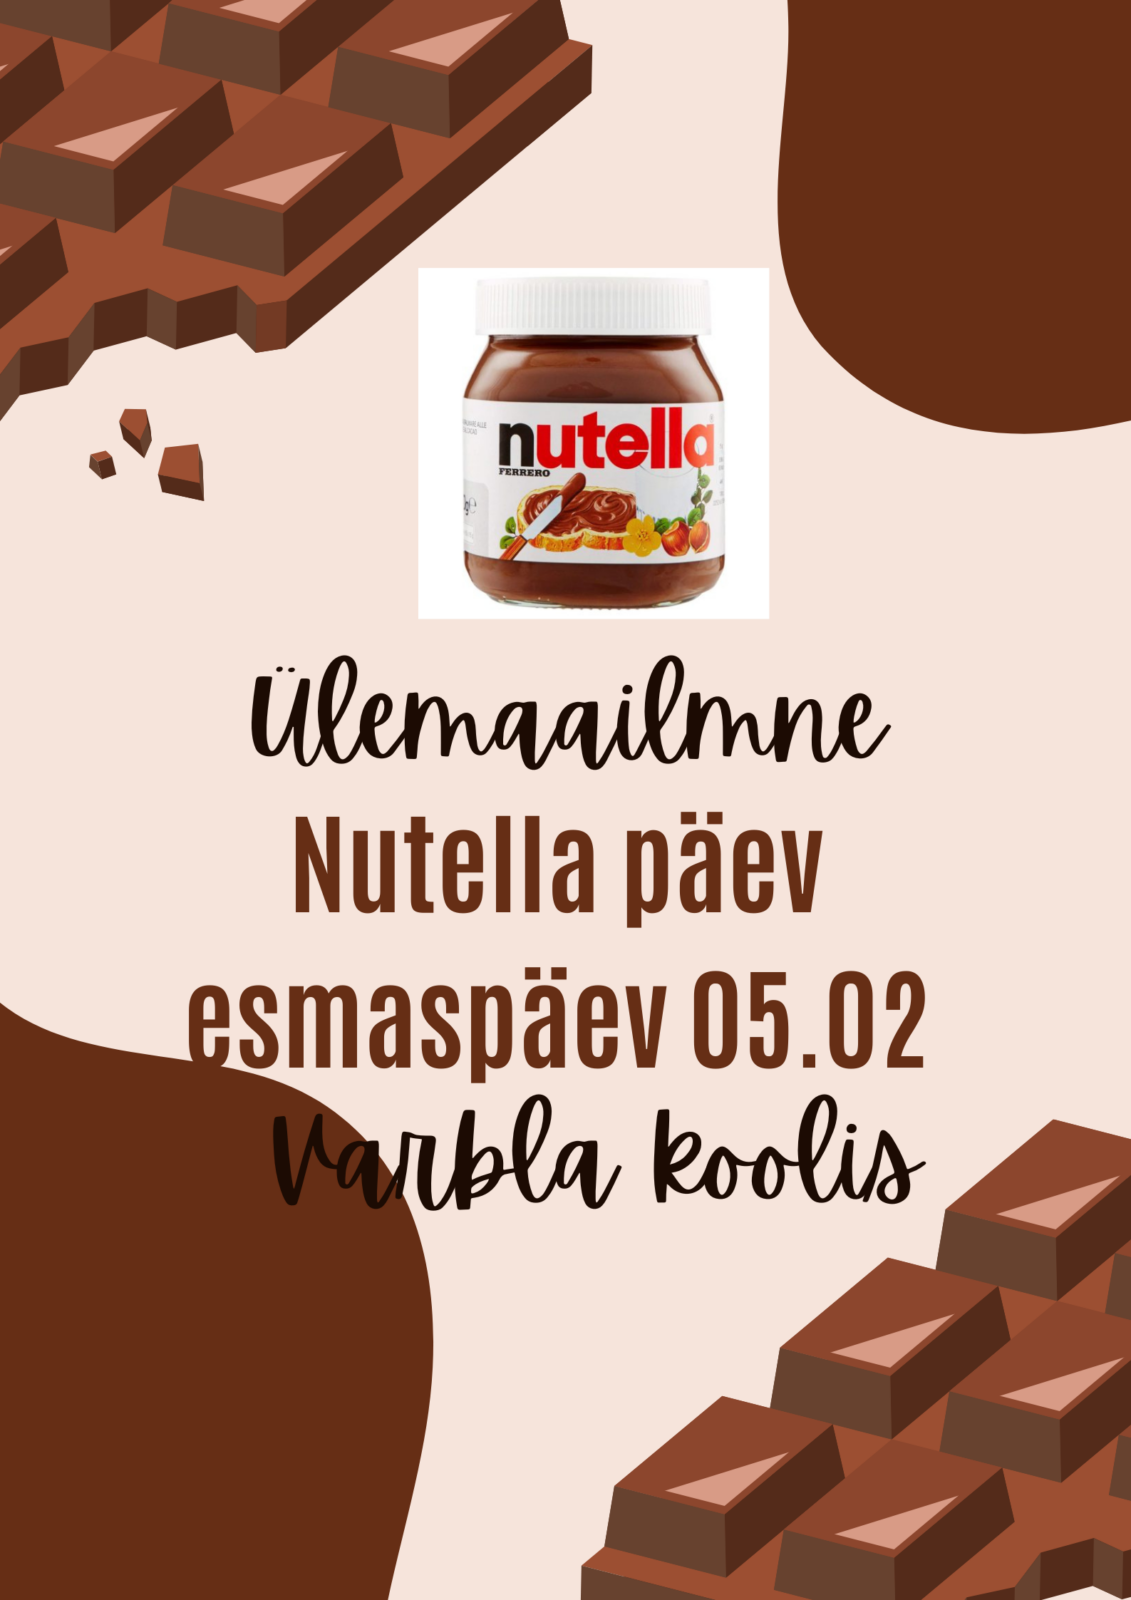 Ziua Mondială a Nutella – Varbella Cool